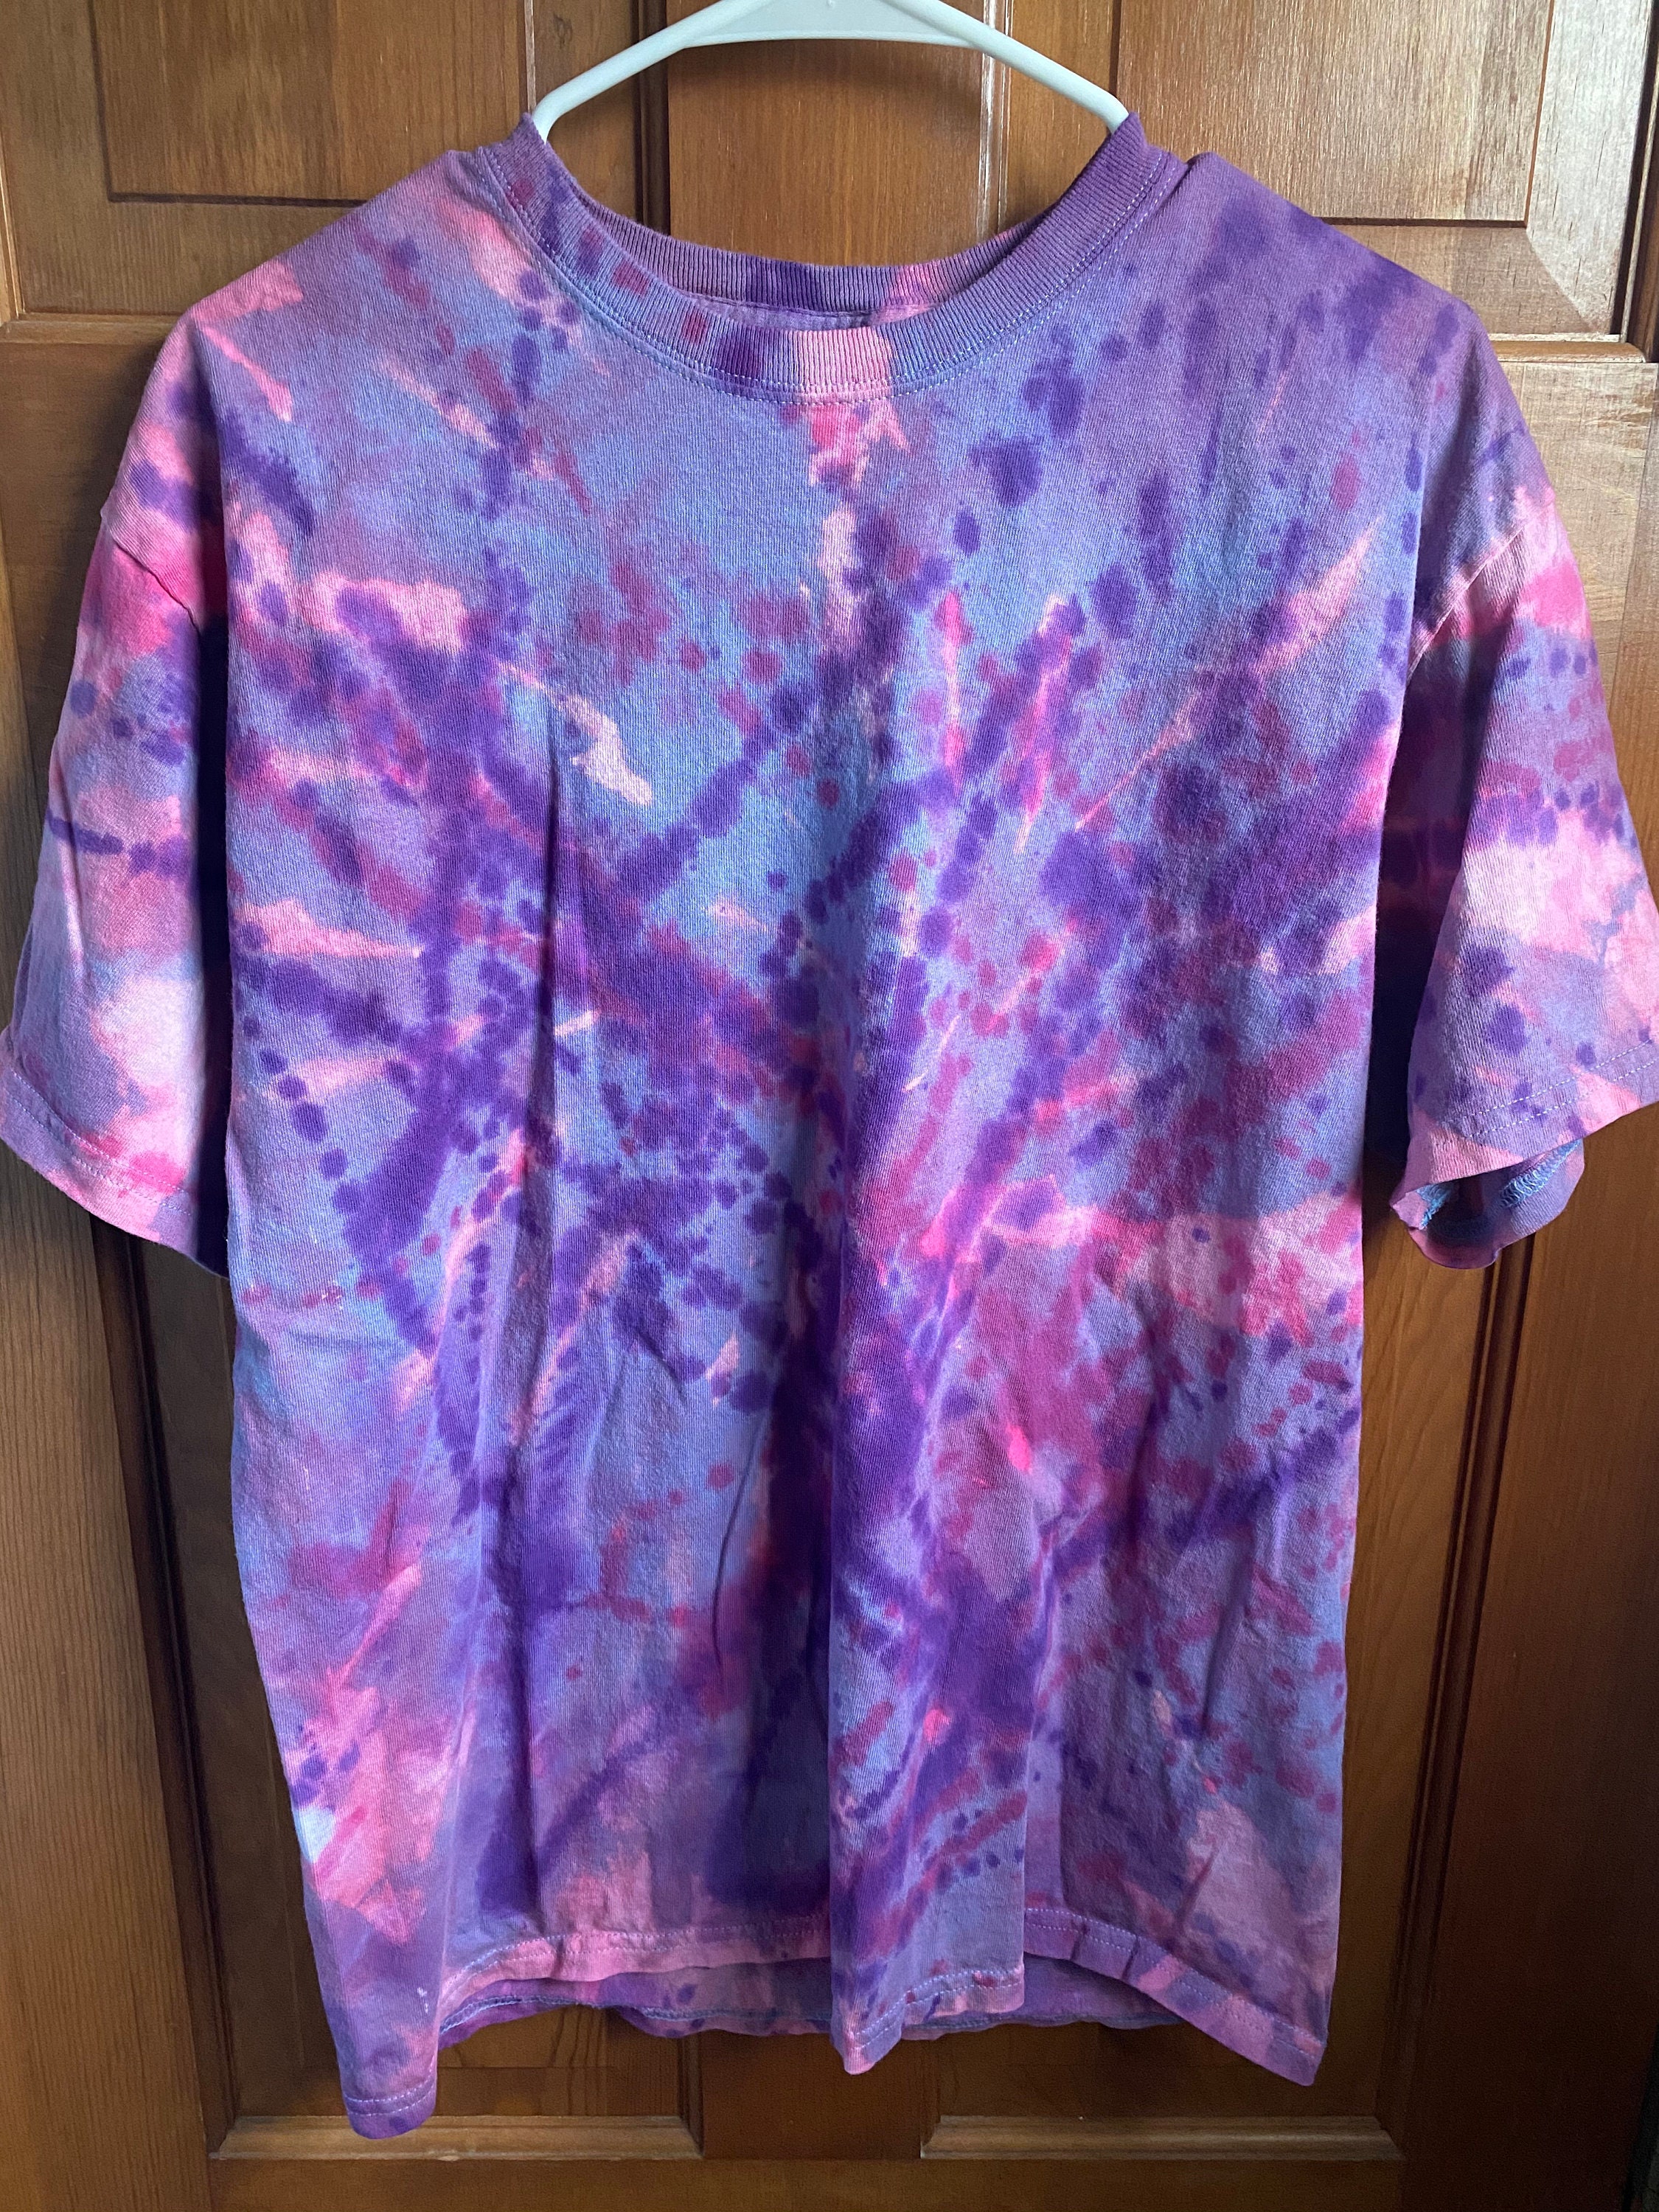 Pink/Blue/Purple Tie Dye/Splatter T-shirt | Etsy